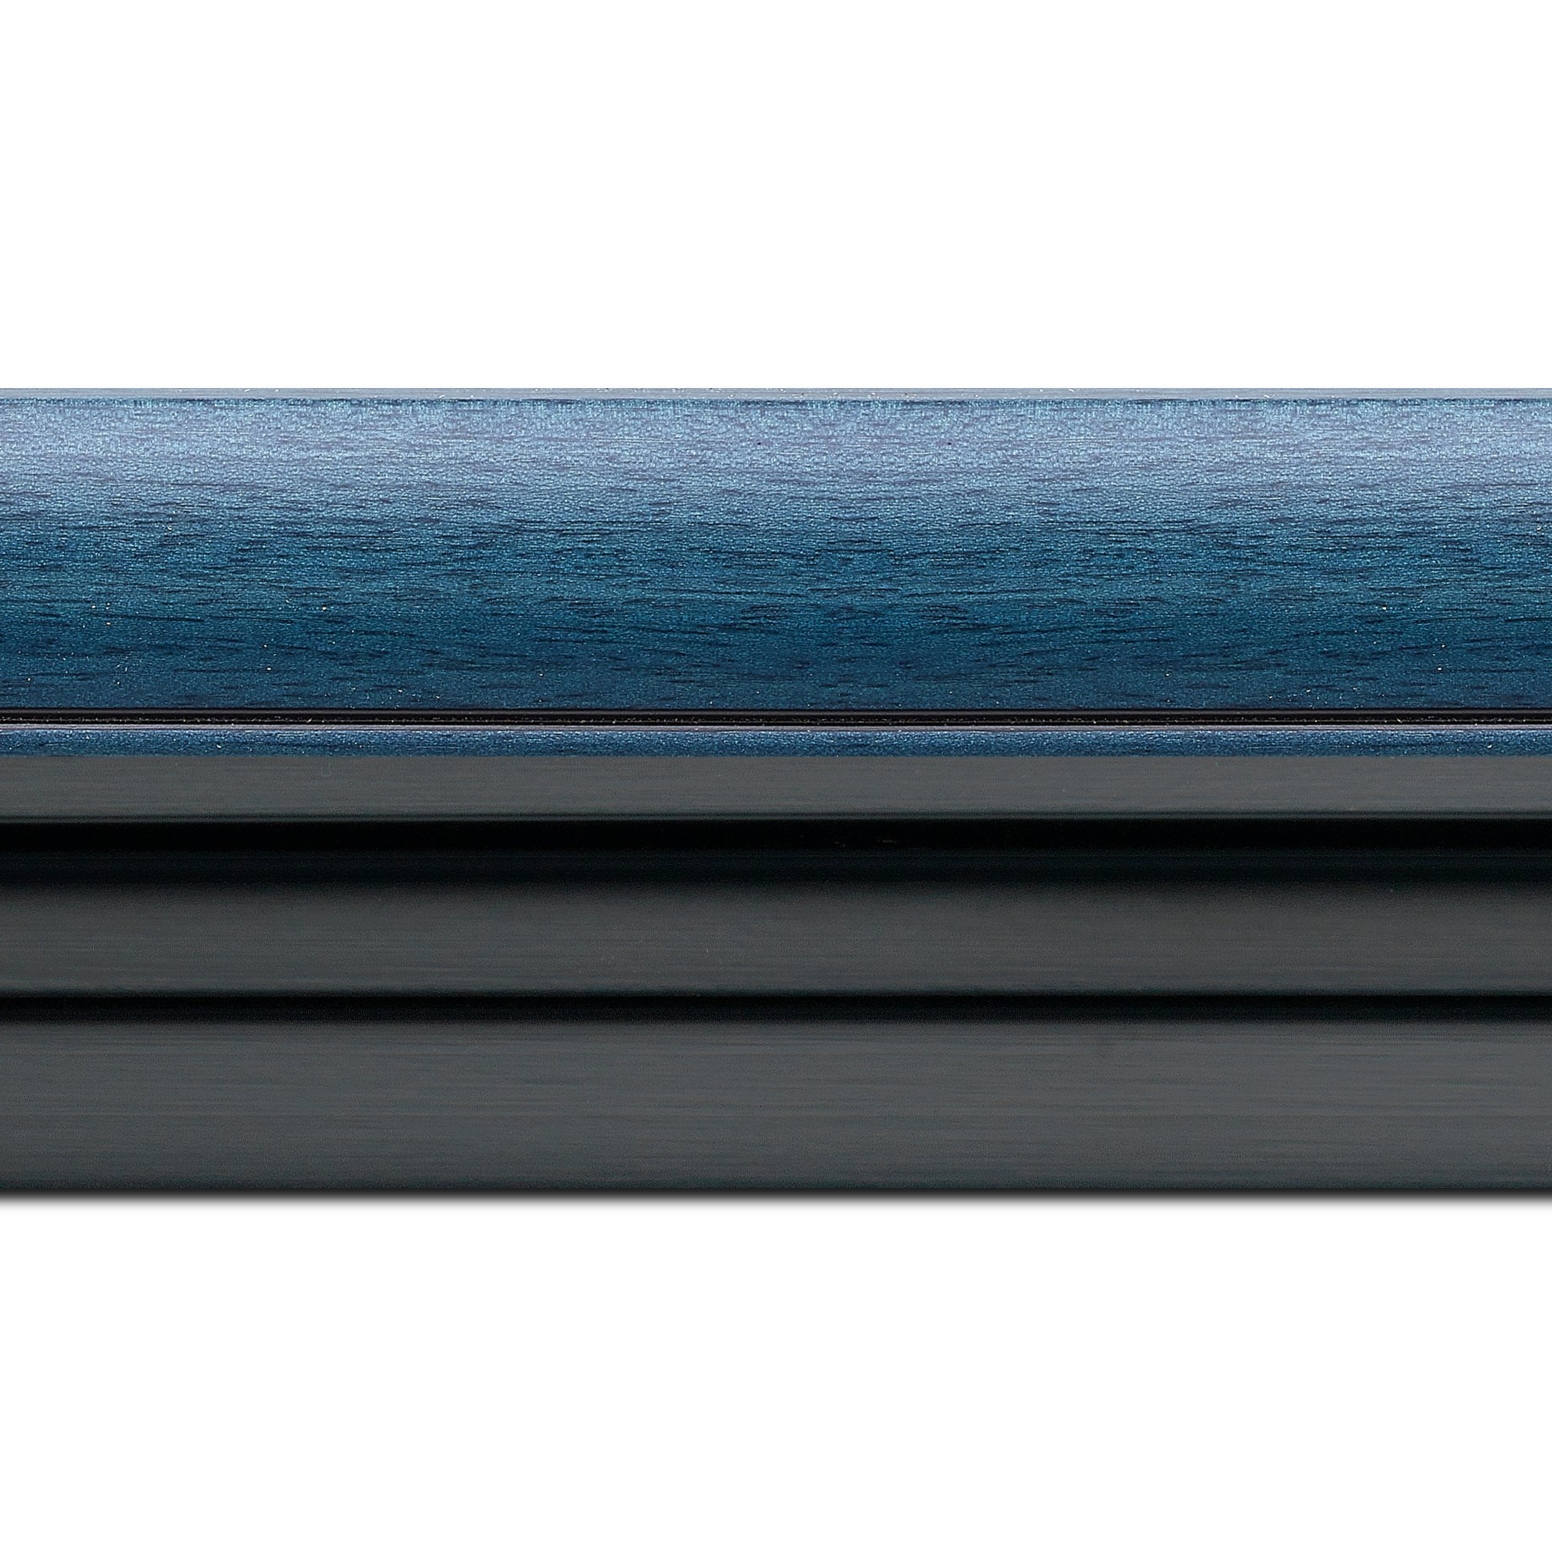 Caisse américaine pour peintures  americaine bois bleu noir — 80 x 80